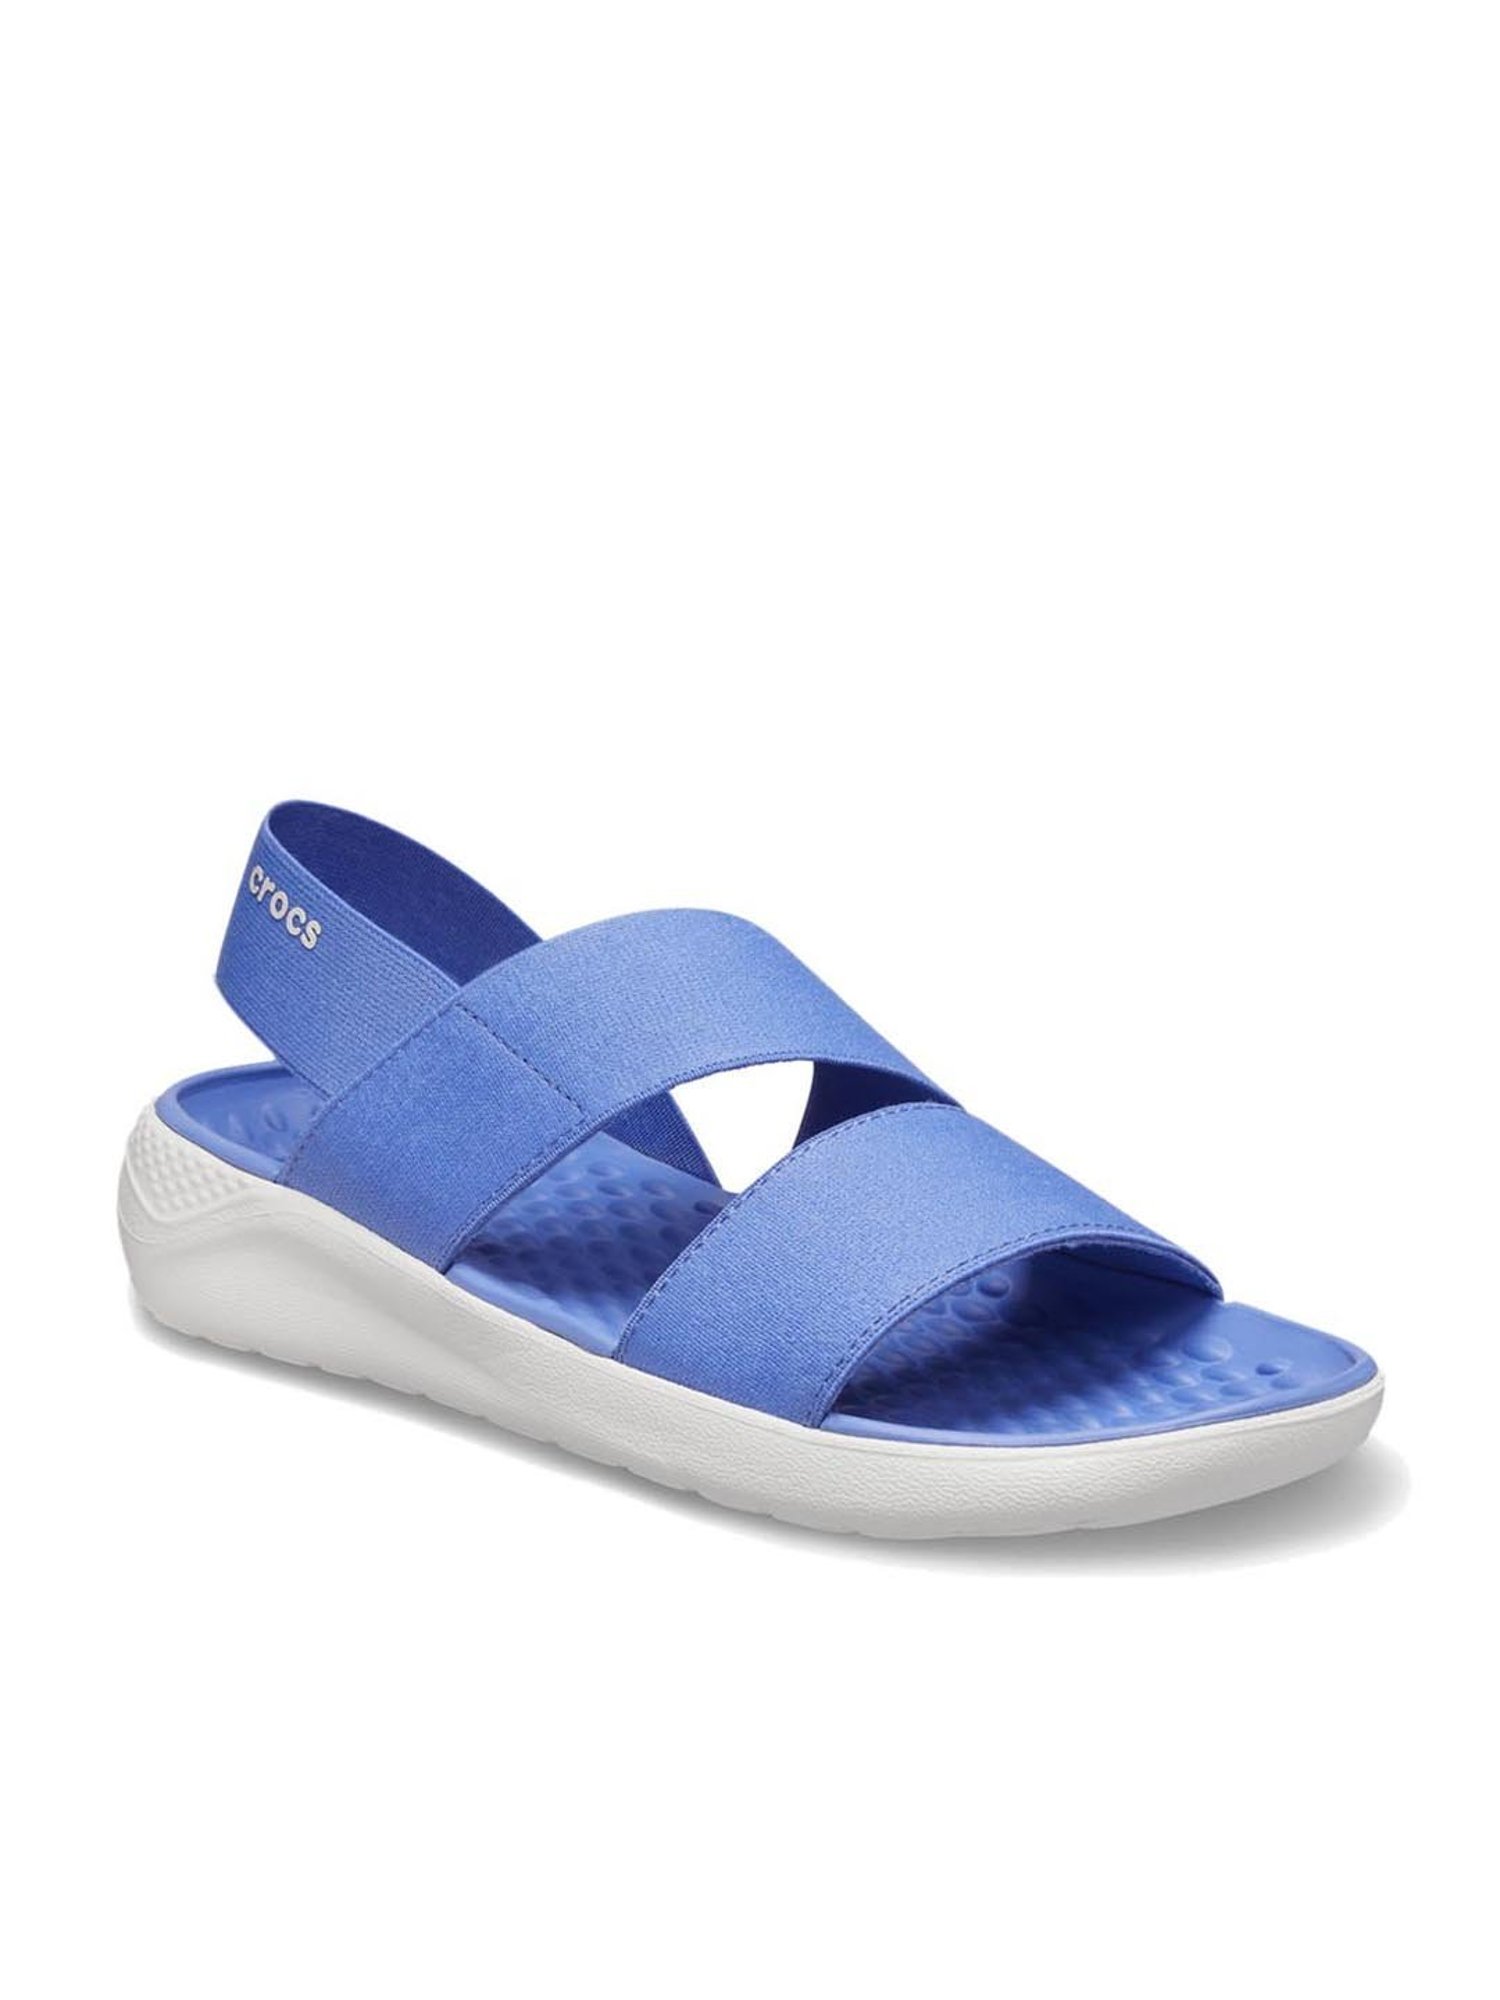 Amazon.com | Crocs Unisex Classic Slide Sandals, Bone, 2 Men/4 Women |  Slides